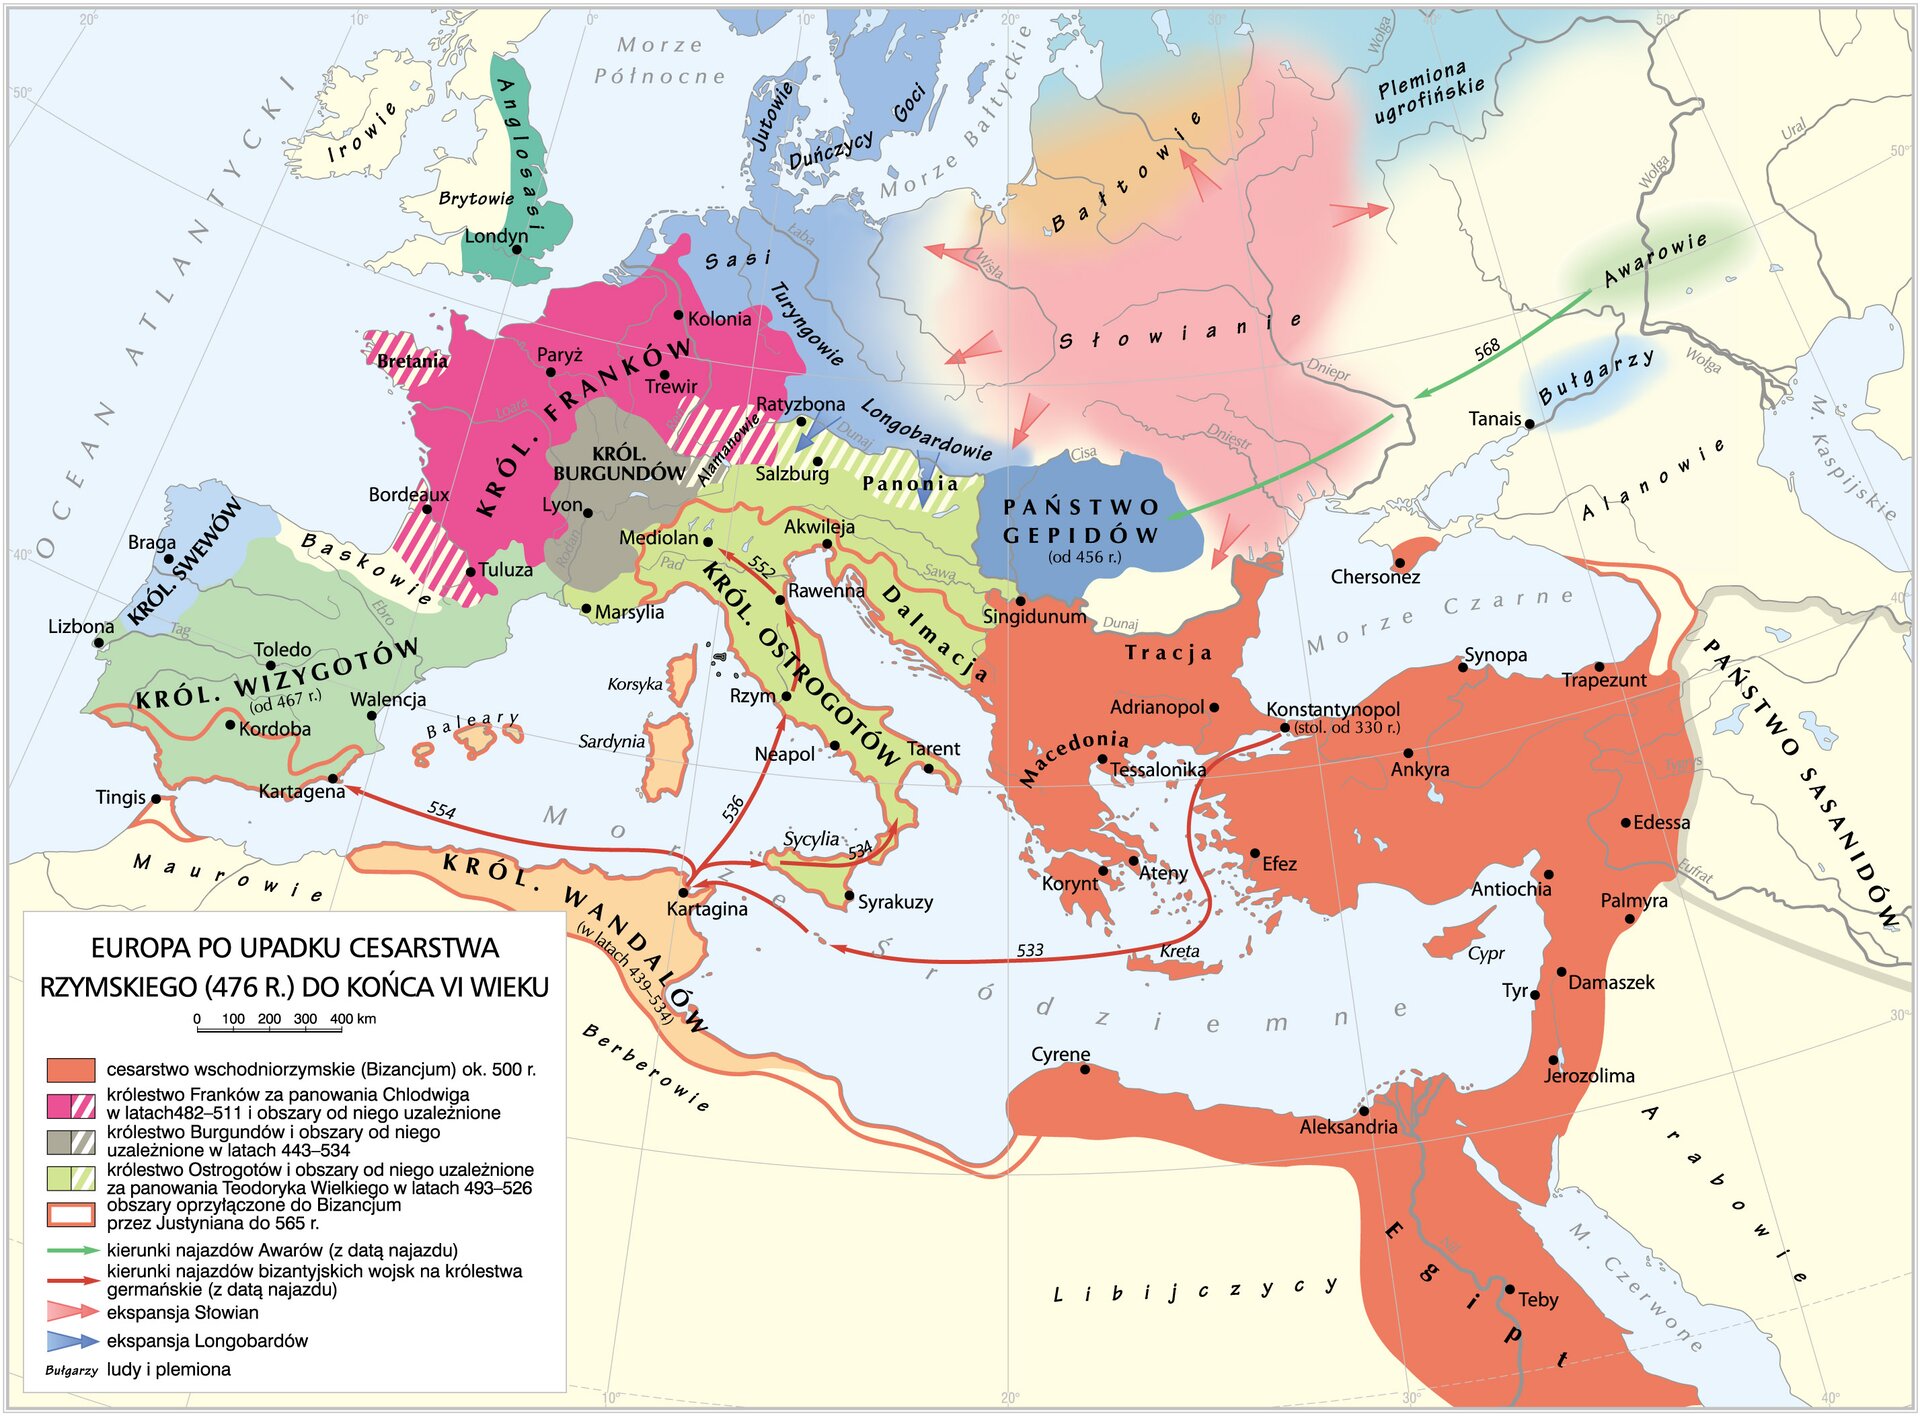 Europa po upadku cesarstwa rzymskiego Europa po upadku cesarstwa rzymskiego Źródło: Krystian Chariza i zespół.